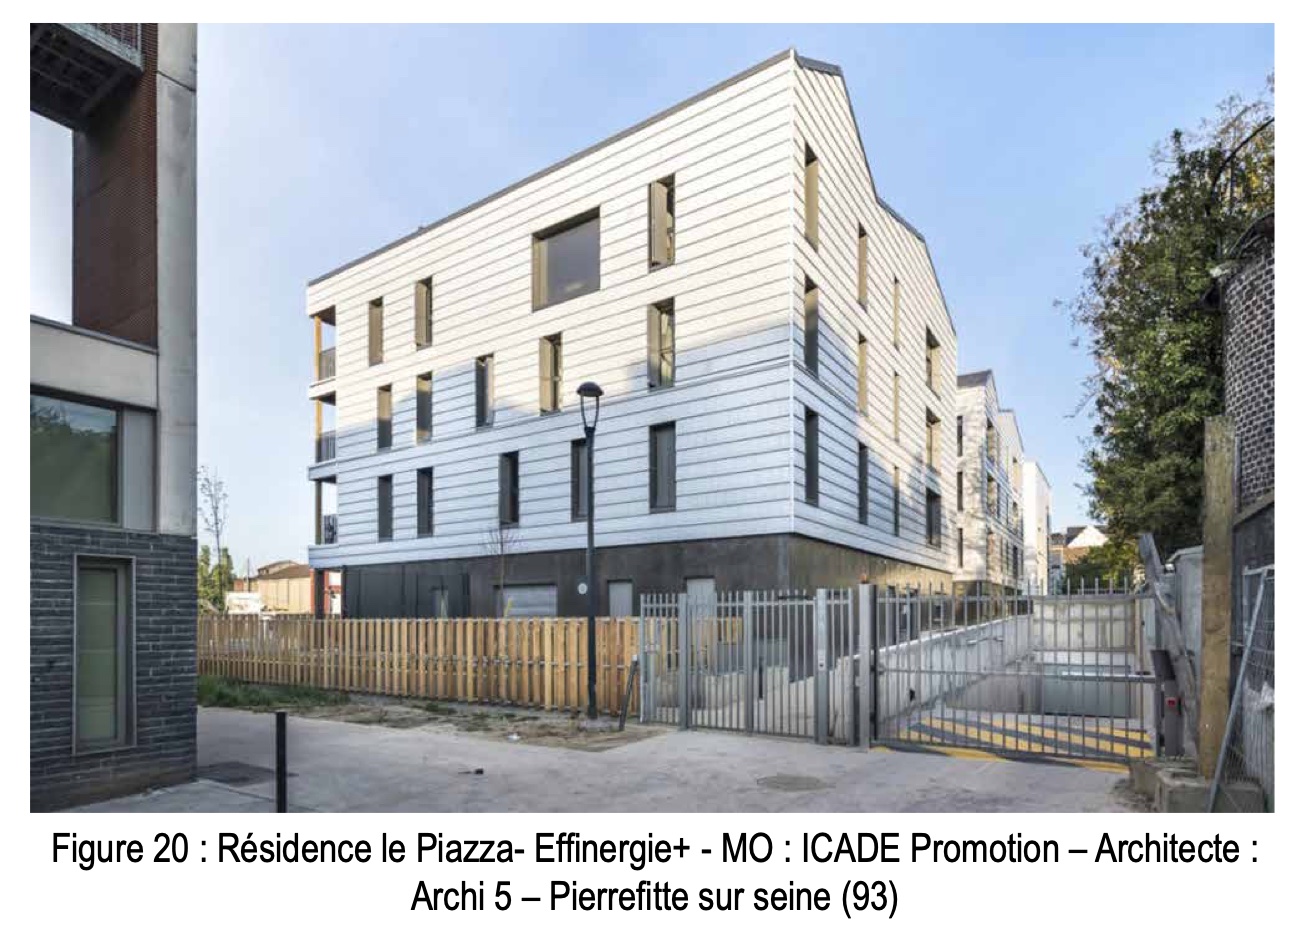 Résidence le Piazza- Effinergie+ - MO : ICADE Promotion – Architecte : Archi 5 – Pierrefitte sur seine (93)